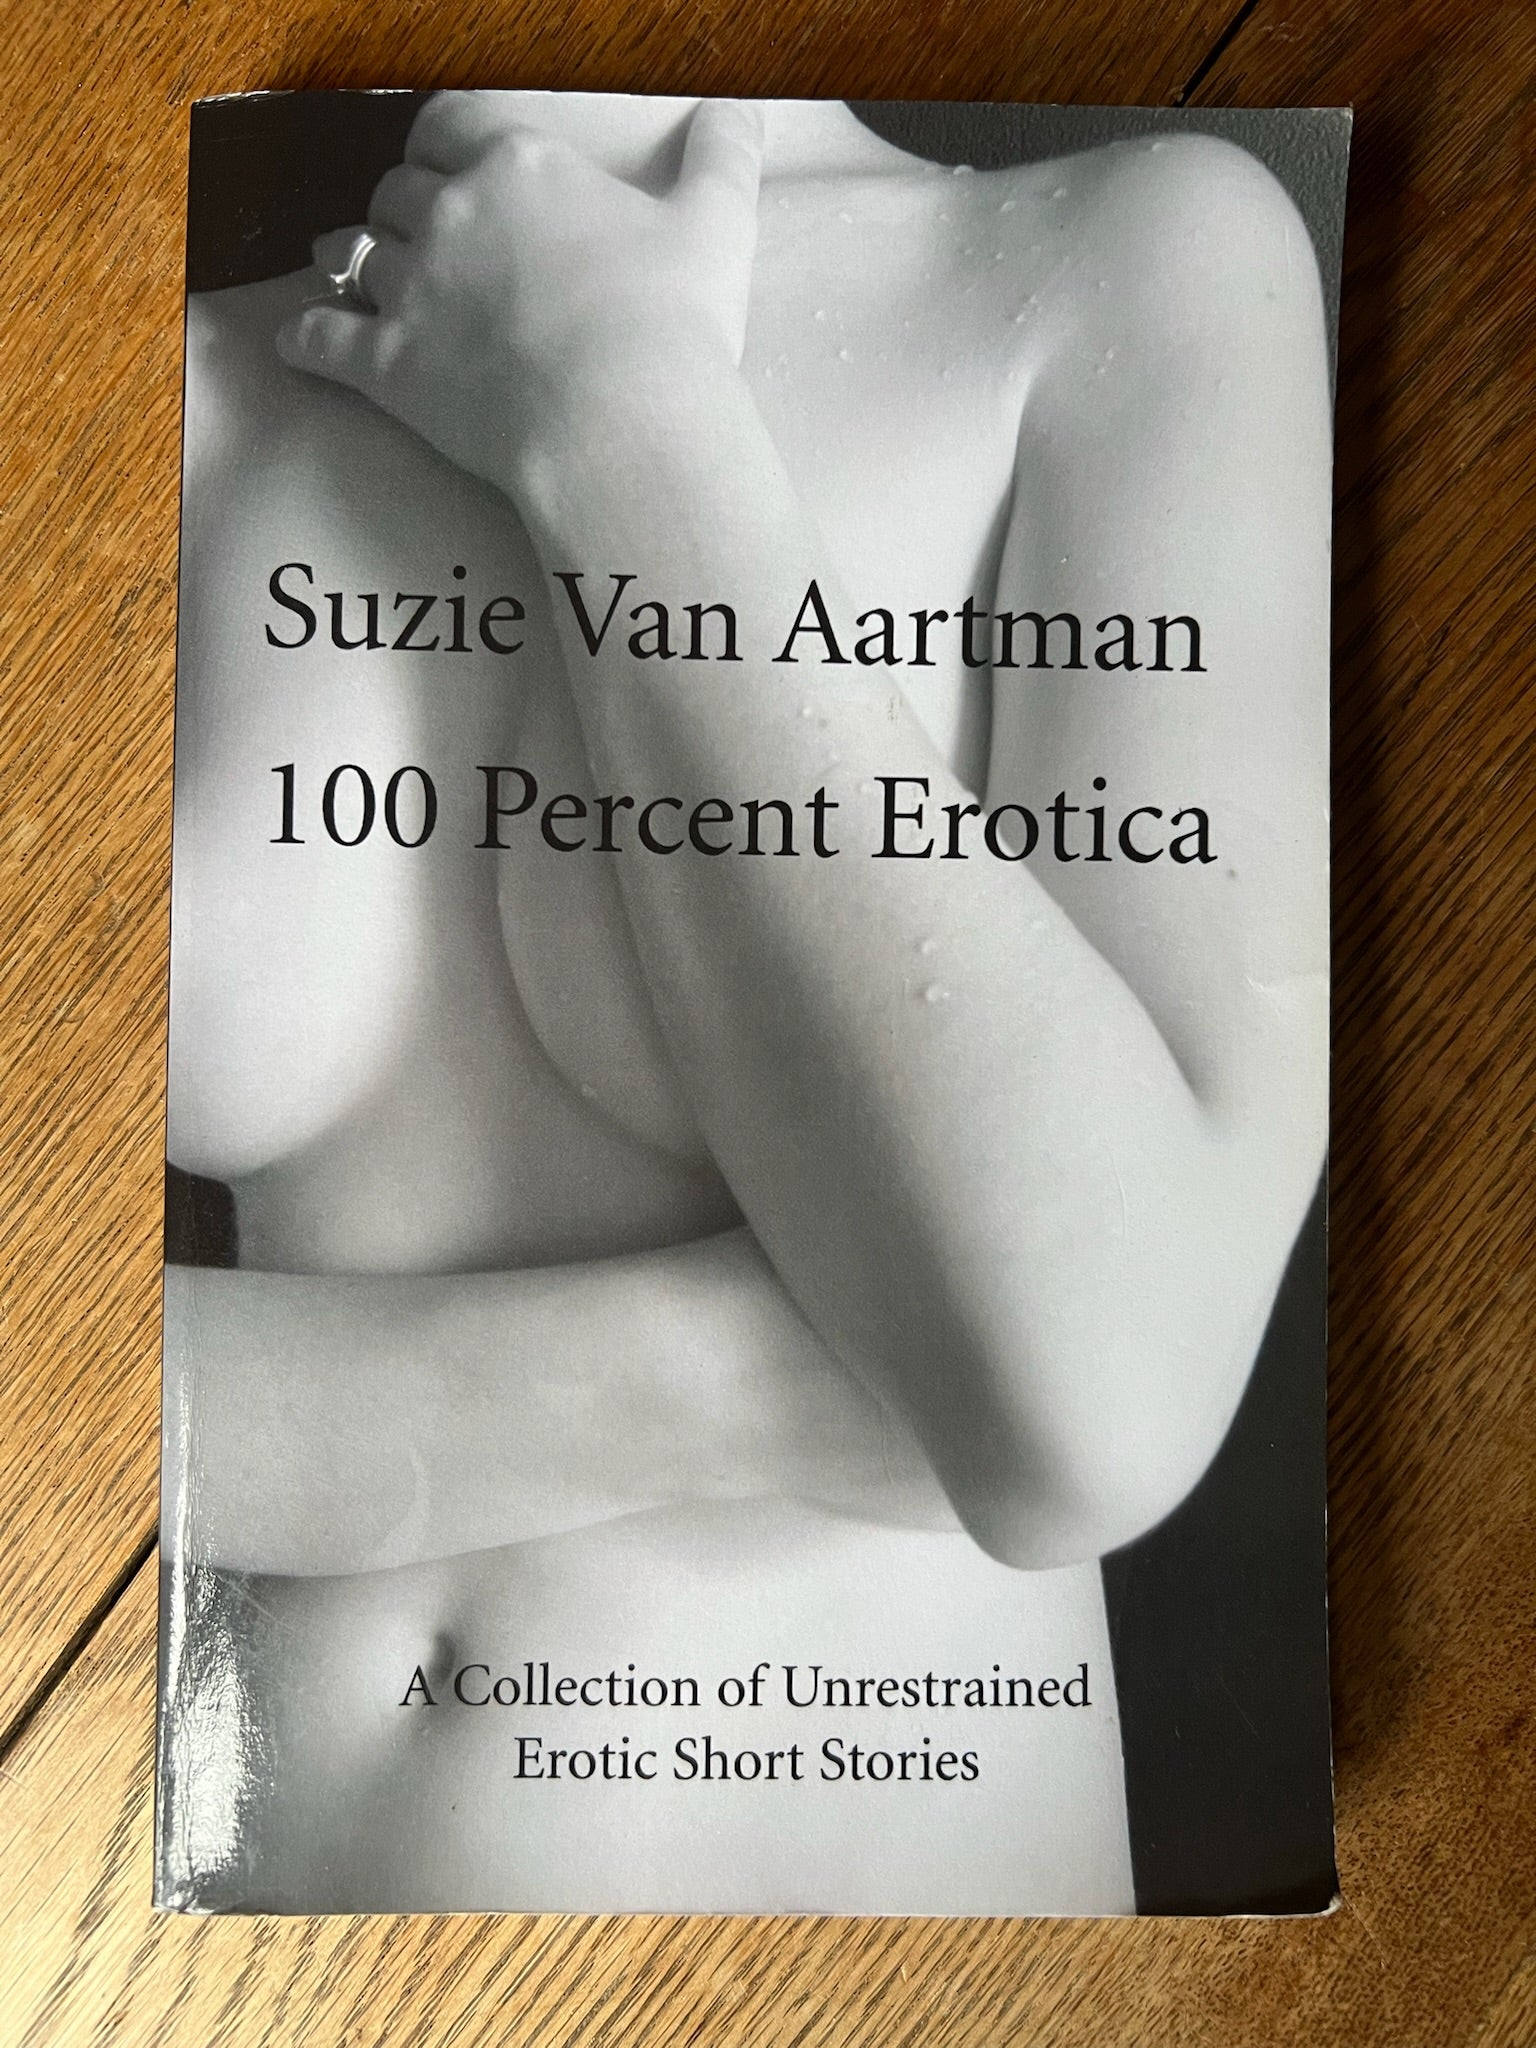 “100 PERCENT EROTICA’ Suzie Van Aartman